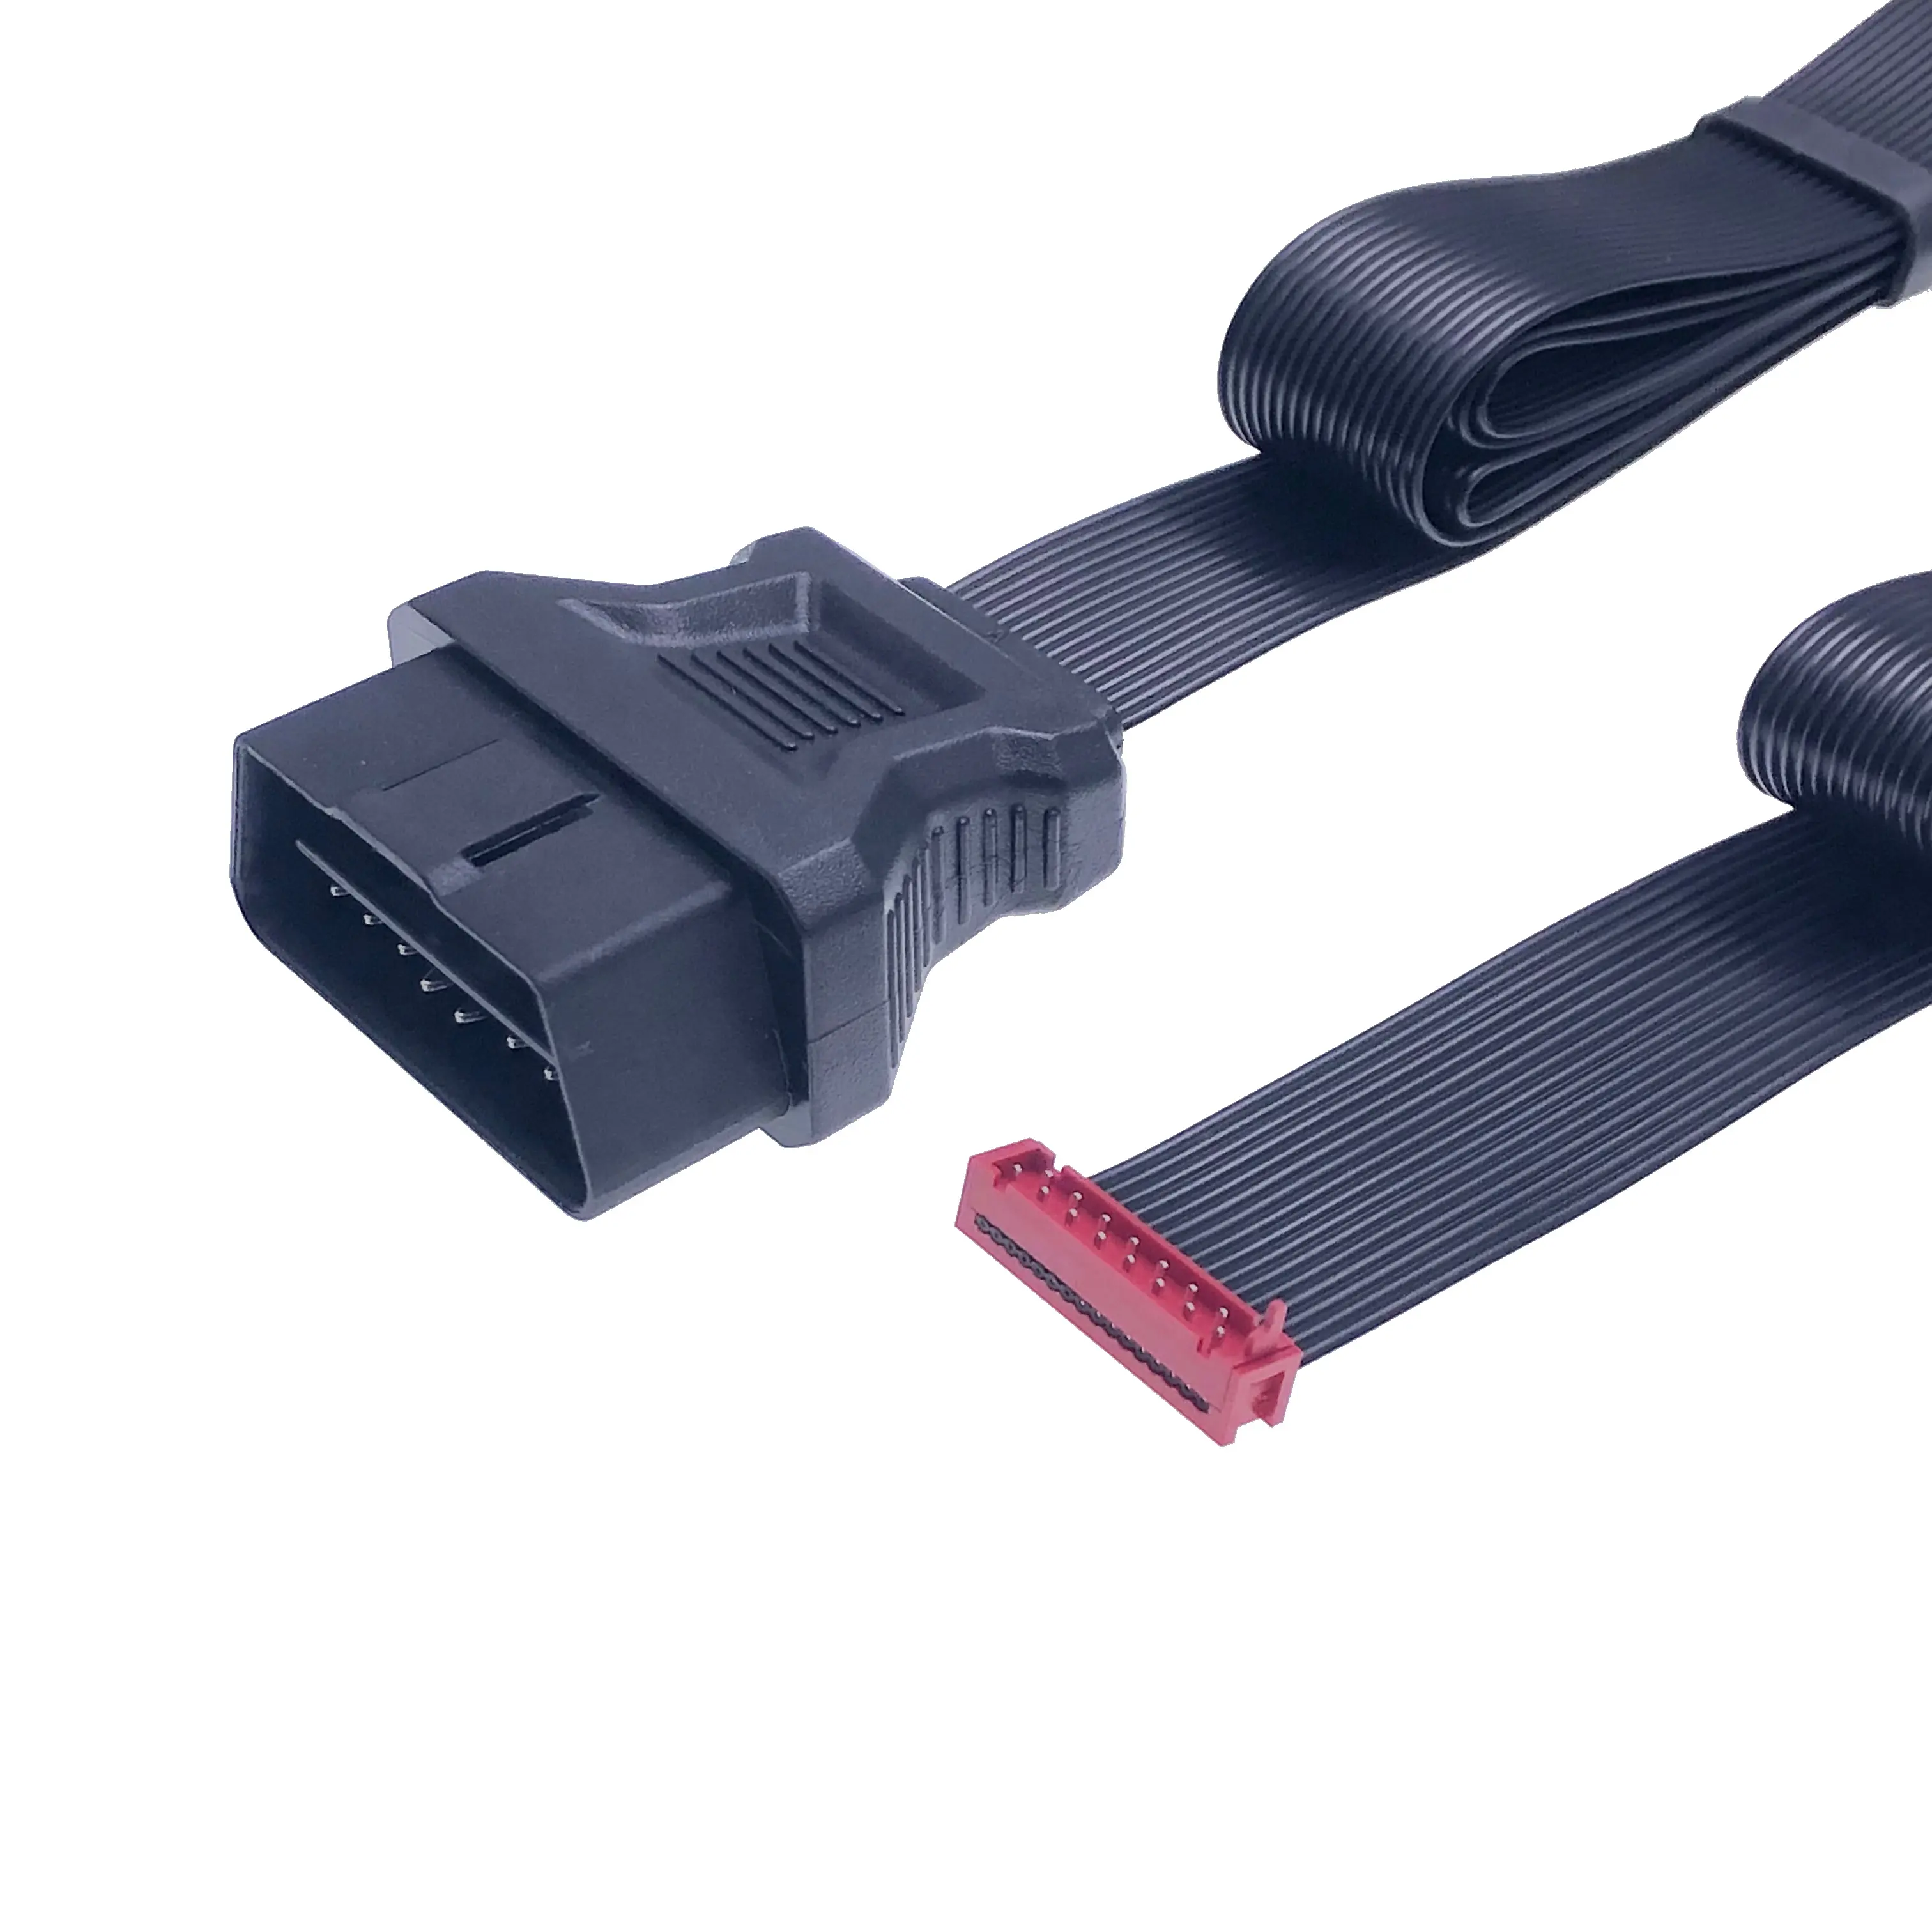 Diagnostic Tool Circuit Test Cables Automotive Lead Kit Car Mechanical Testers Power Item Sensor OBD Cable